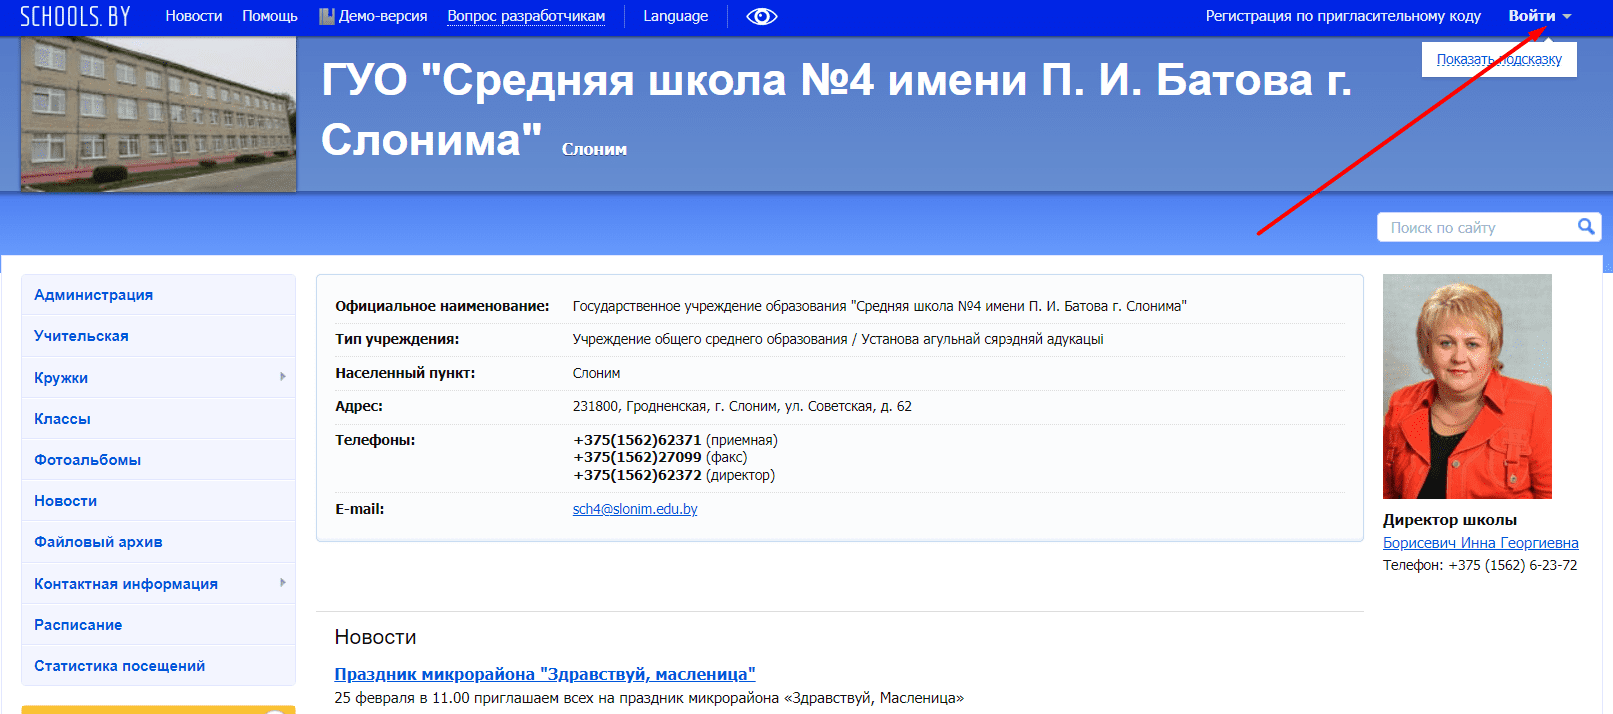 Средняя школа №4 имени П. И. Батова (4slonim.schools.by)